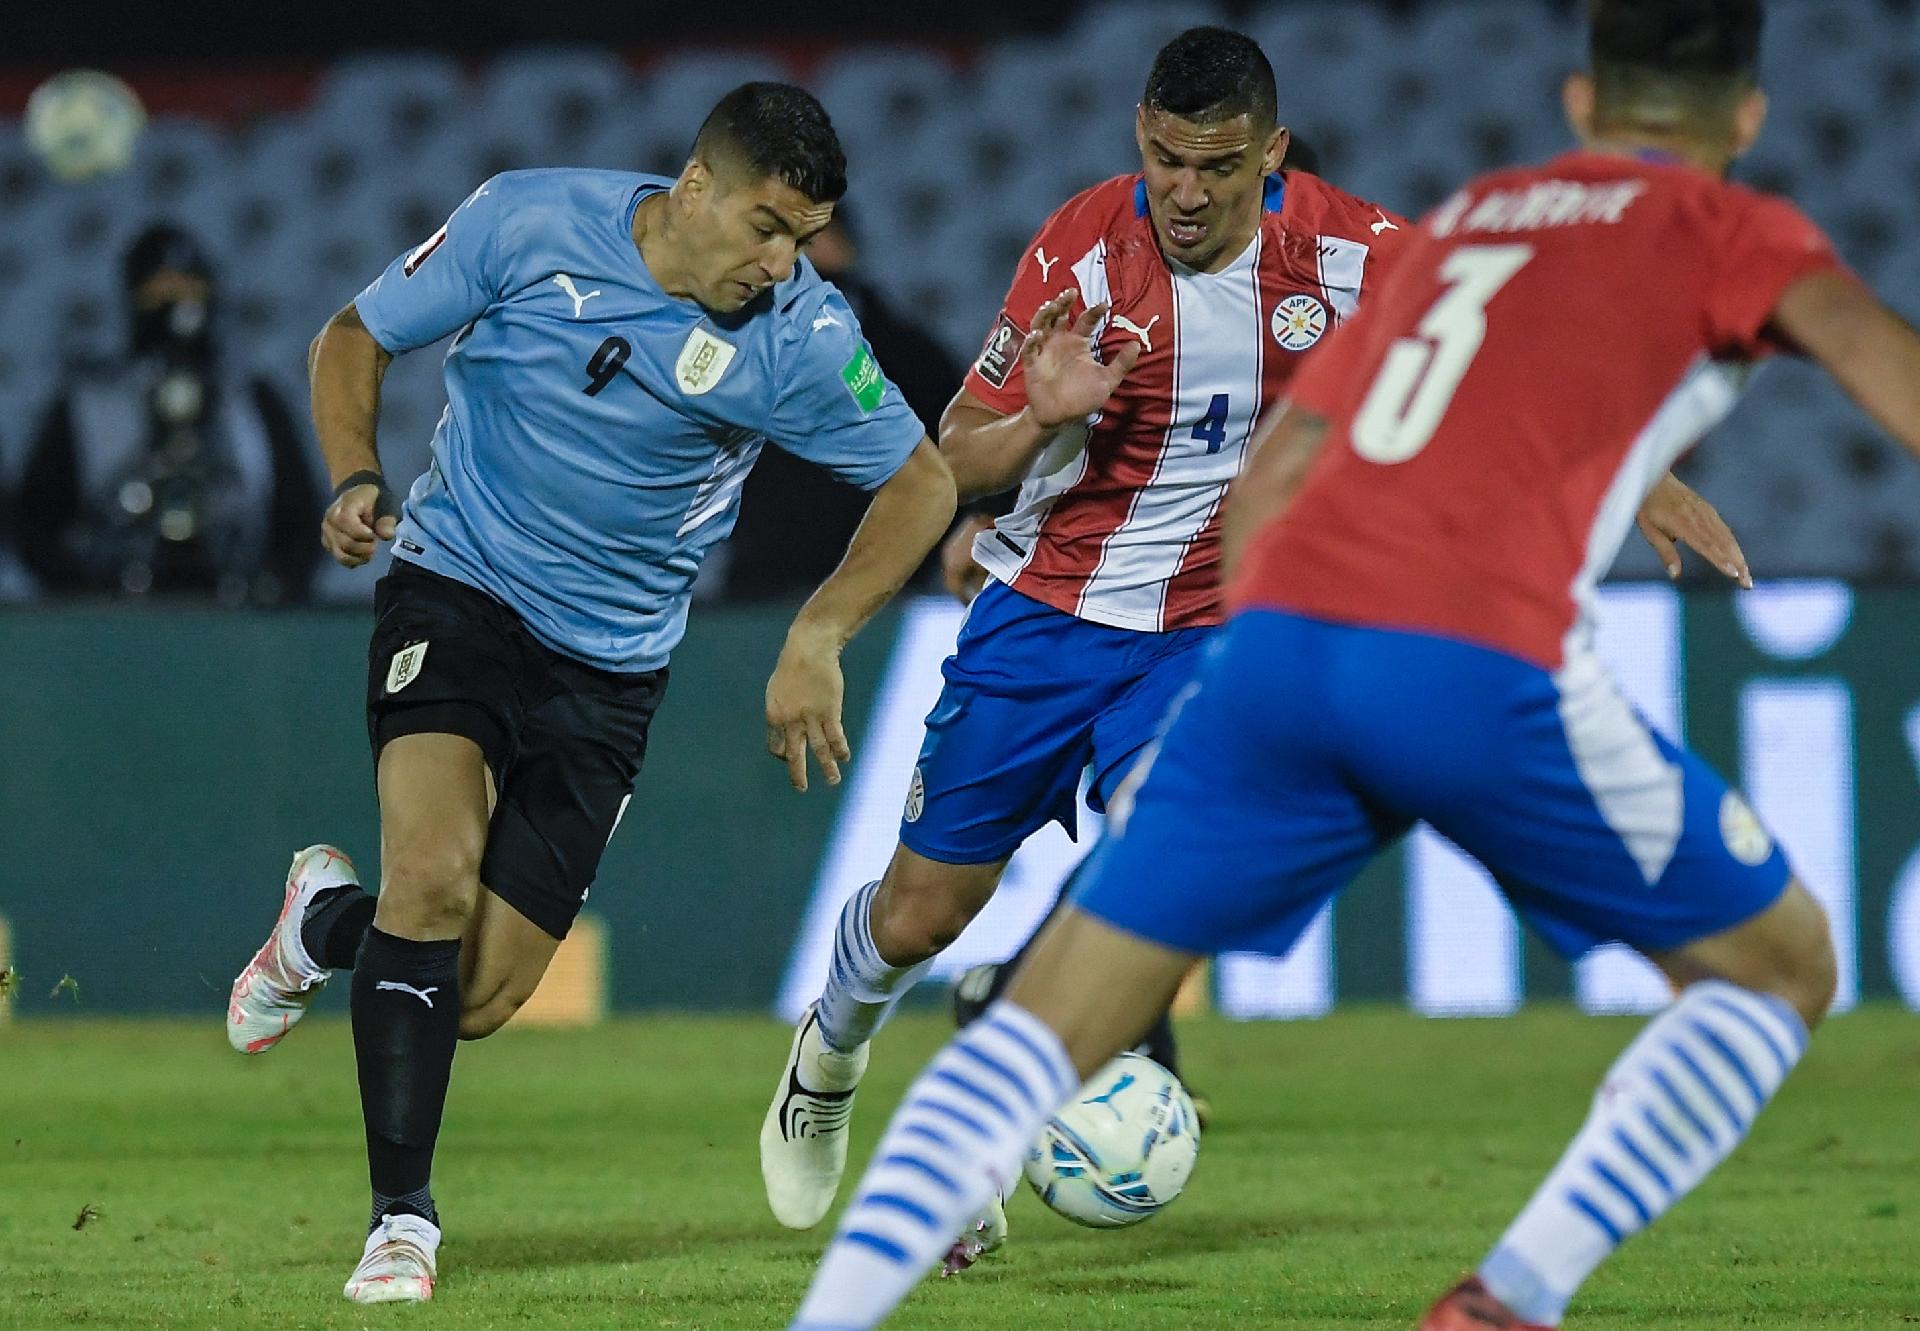 Eliminatorias Em Jogo Morno Paraguai E Uruguai Ficam No 0 A 0